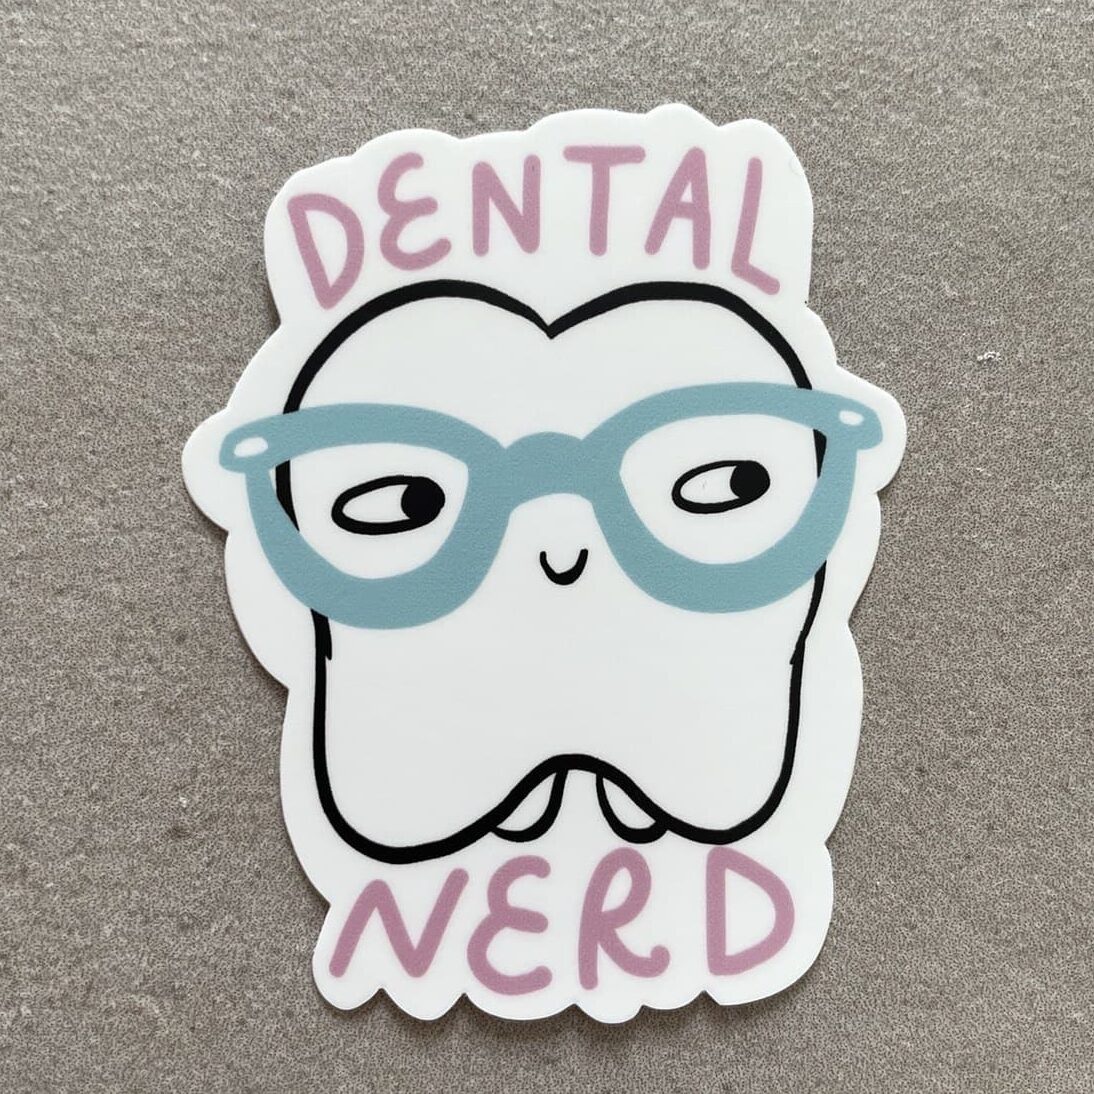 dental-nerd-sticker